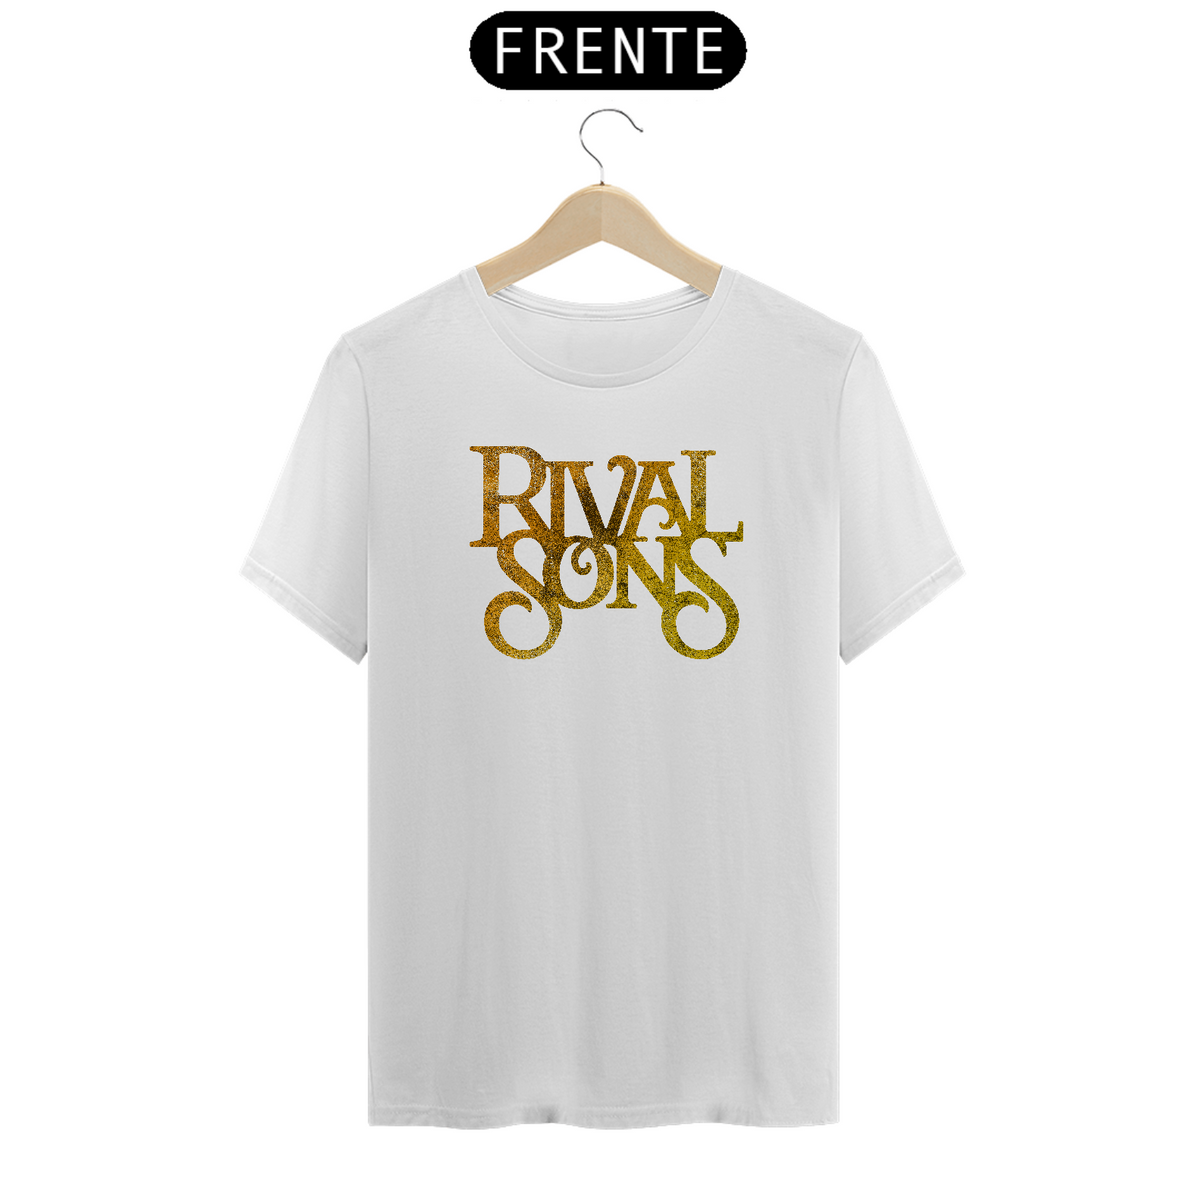 Nome do produto: Rival Sons